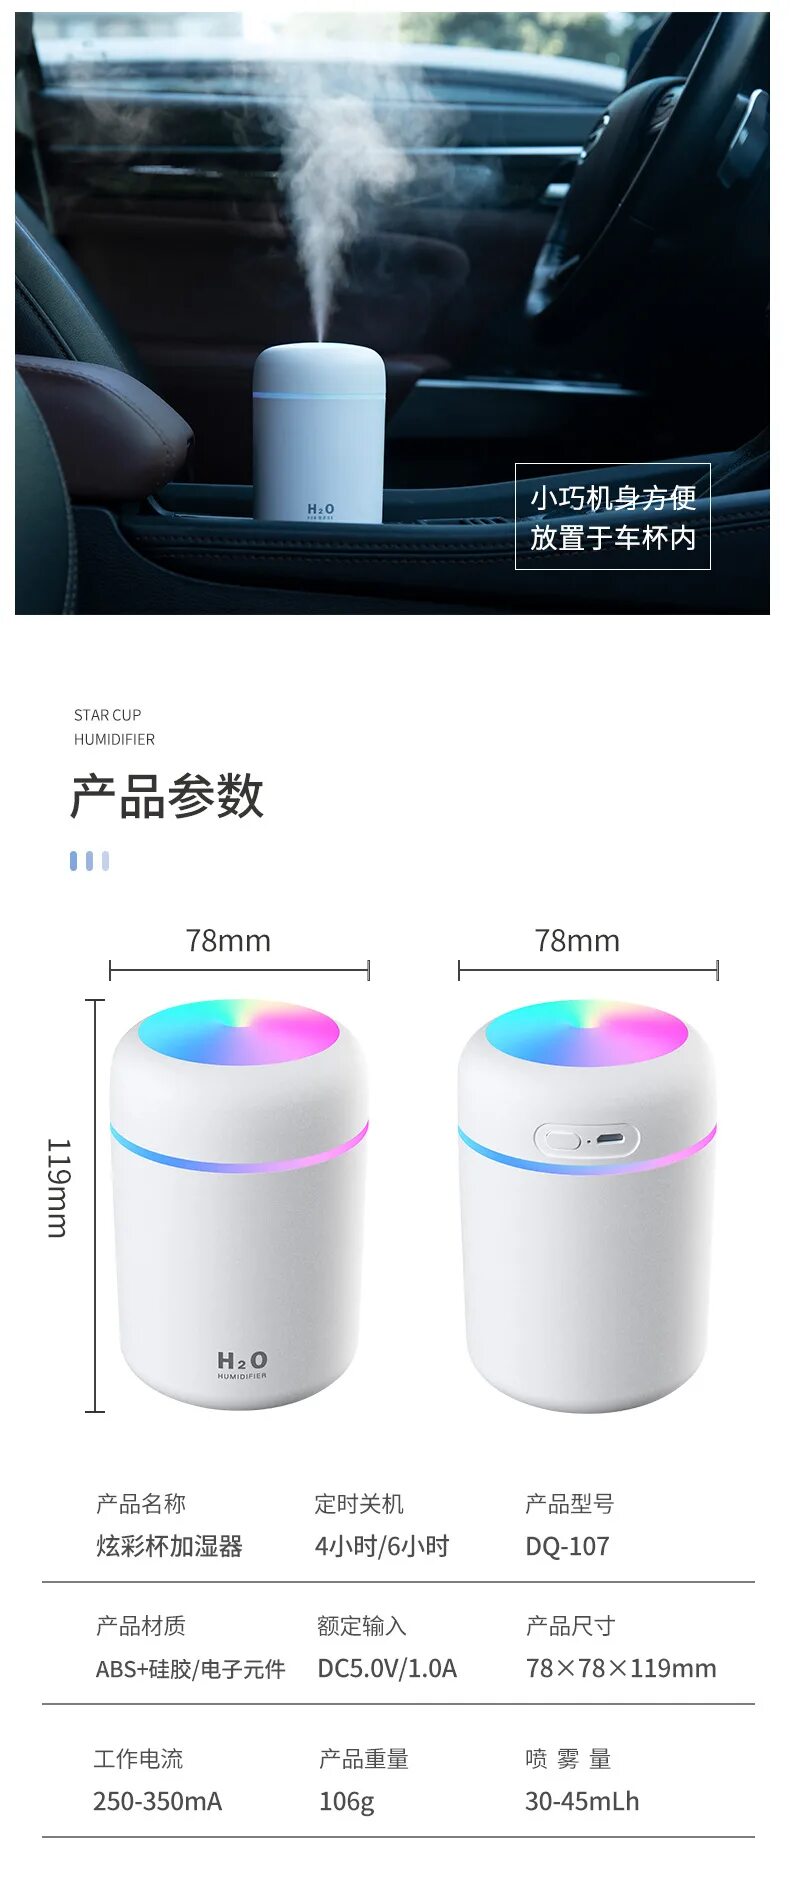 Увлажнитель воздуха USB colorful Humidifier. Увлажнитель воздуха Humidifier h2o инструкция. Портативный увлажнитель воздуха h2o. Увлажнитель воздуха Crystal Double Spray Humidifier. Colorful humidifier инструкция